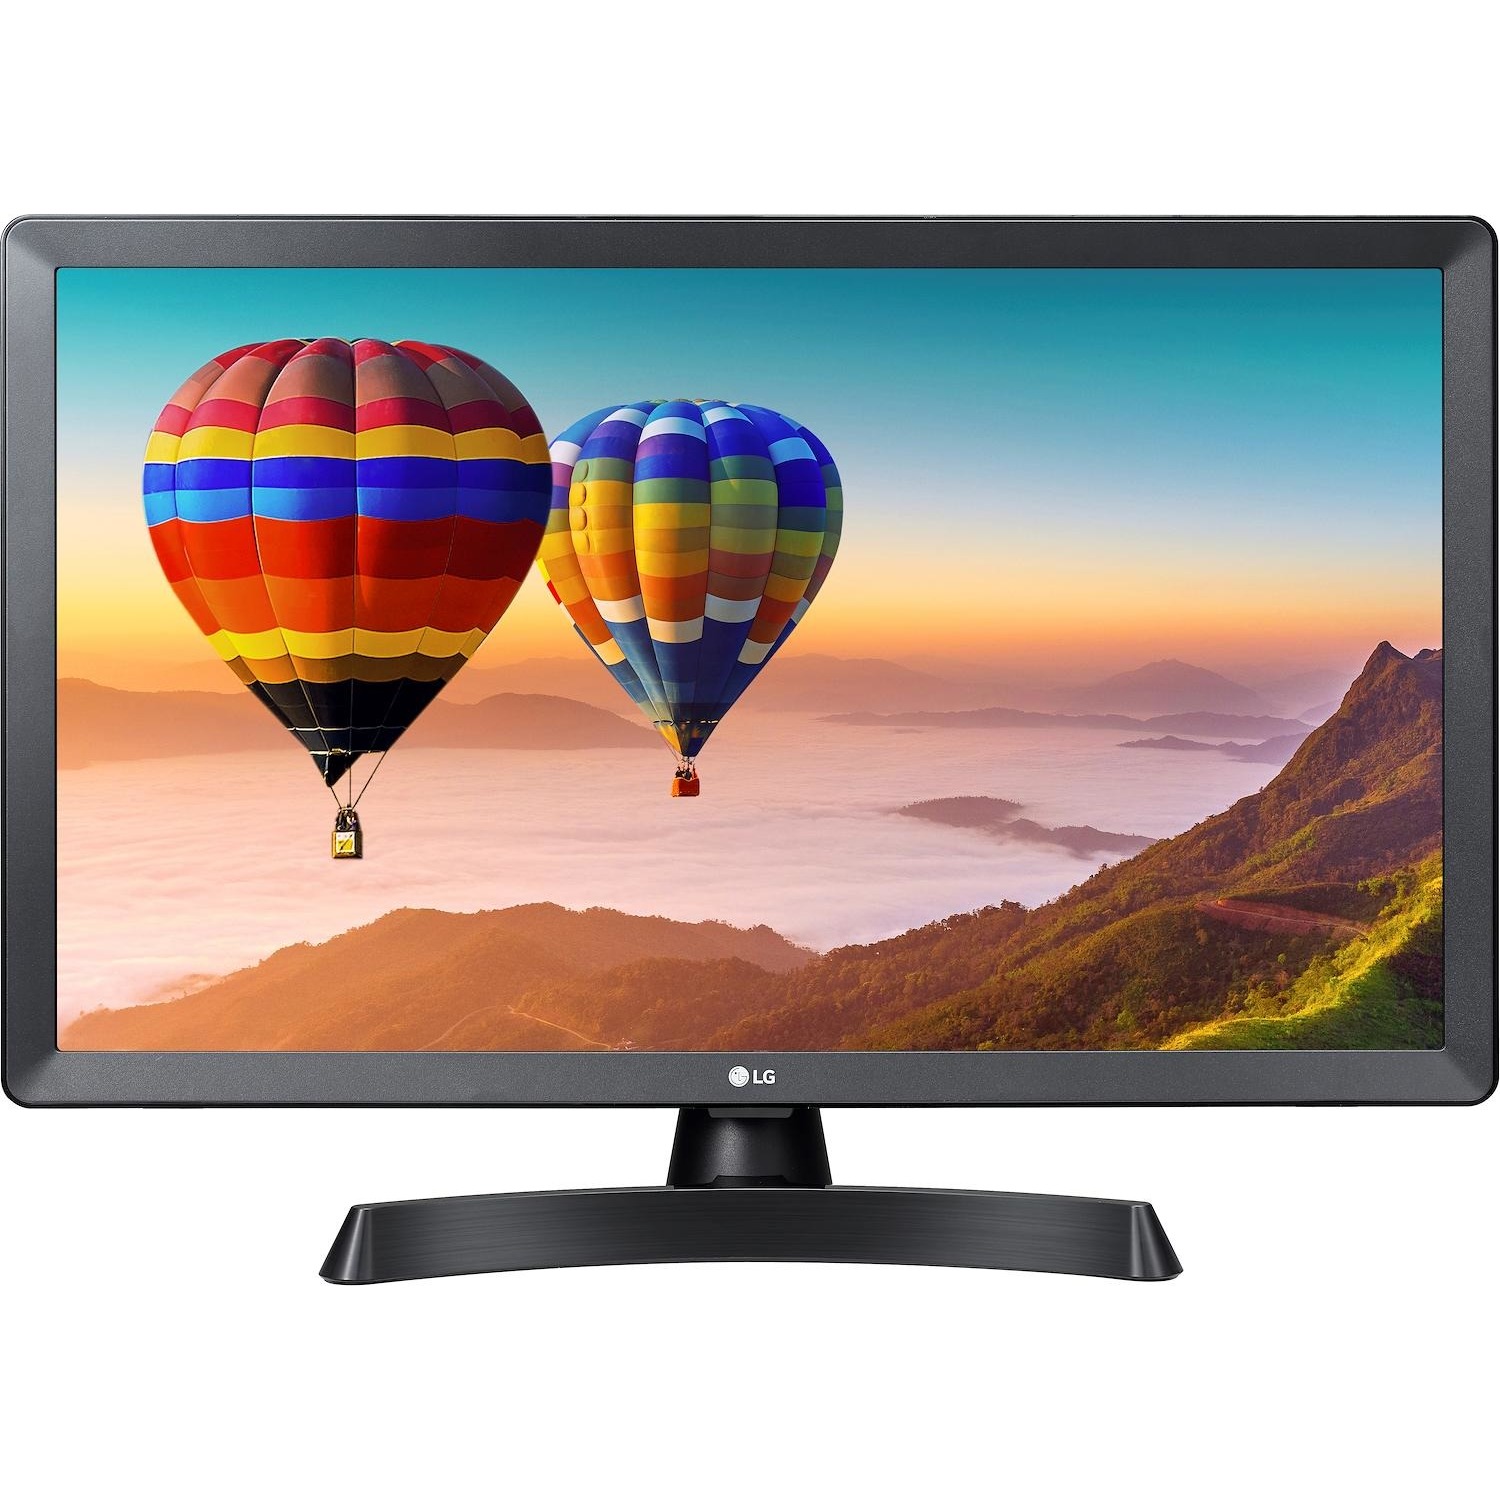 Immagine per TV LED Monitor Smart LG 24TN510S-PZ nero da DIMOStore